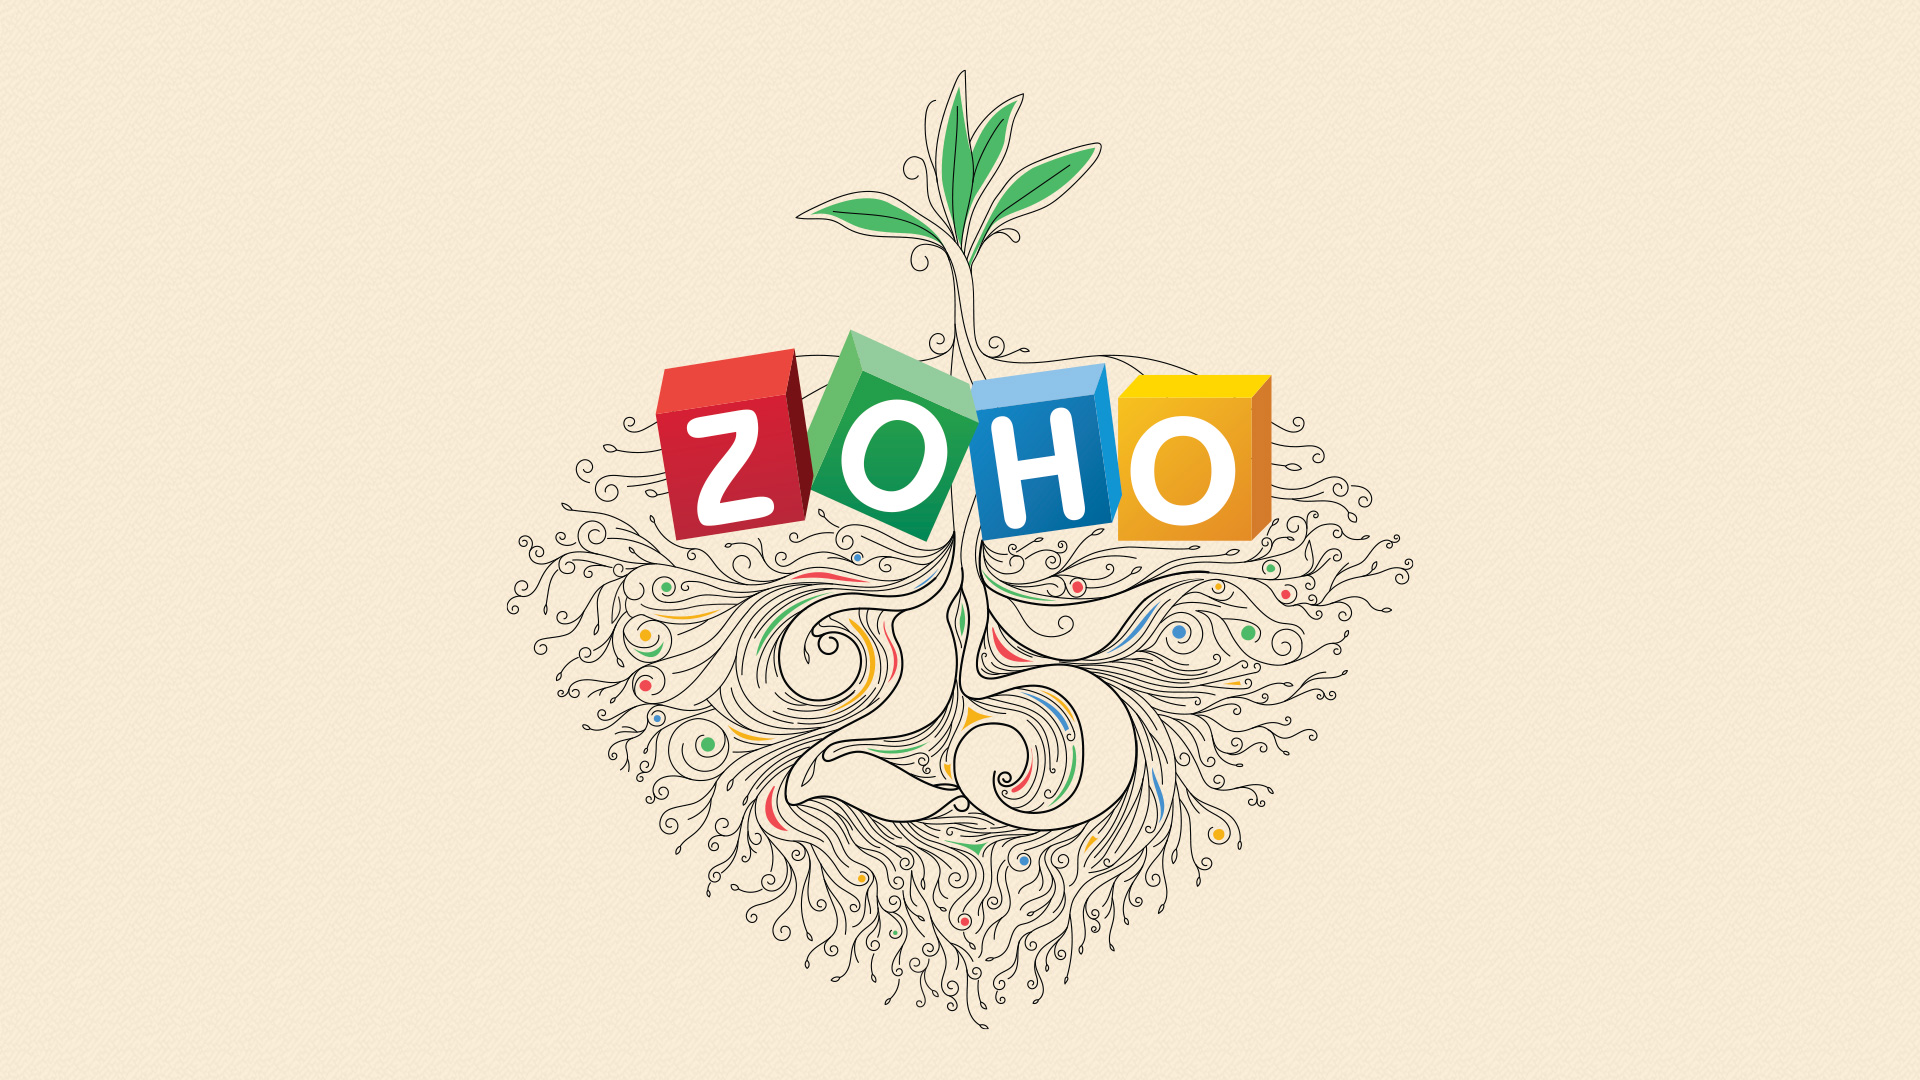 Los 25 años de Zoho